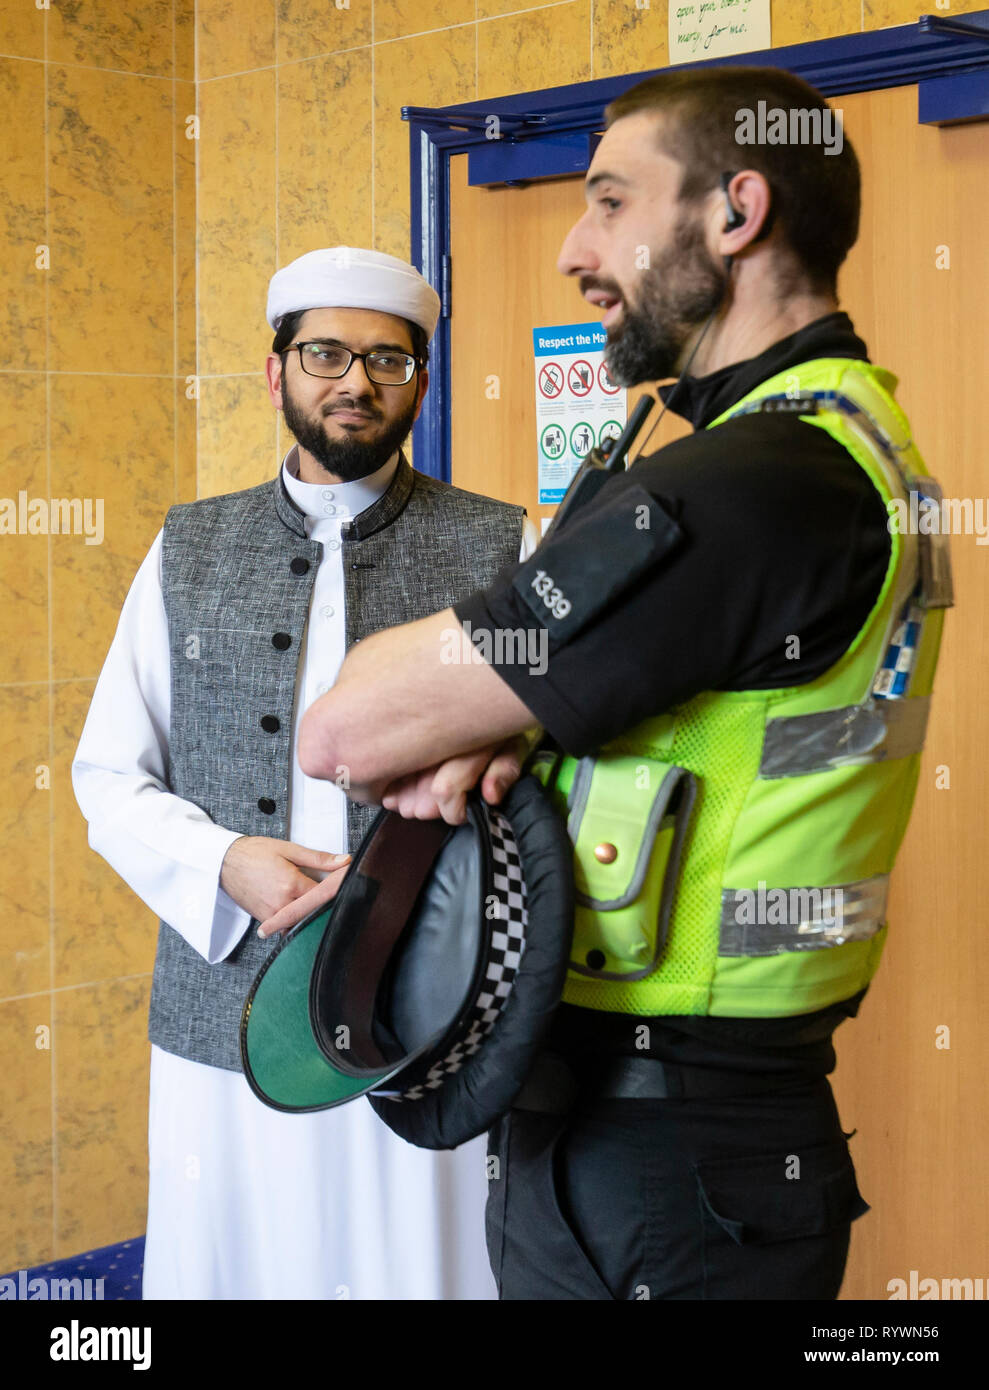 L Imam Qari Asim colloqui al PC idraulico come egli visiti il Makkah moschea di Leeds a prestare garanzia a seguito della moschea di Christchurch attacchi in Nuova Zelanda. Foto Stock